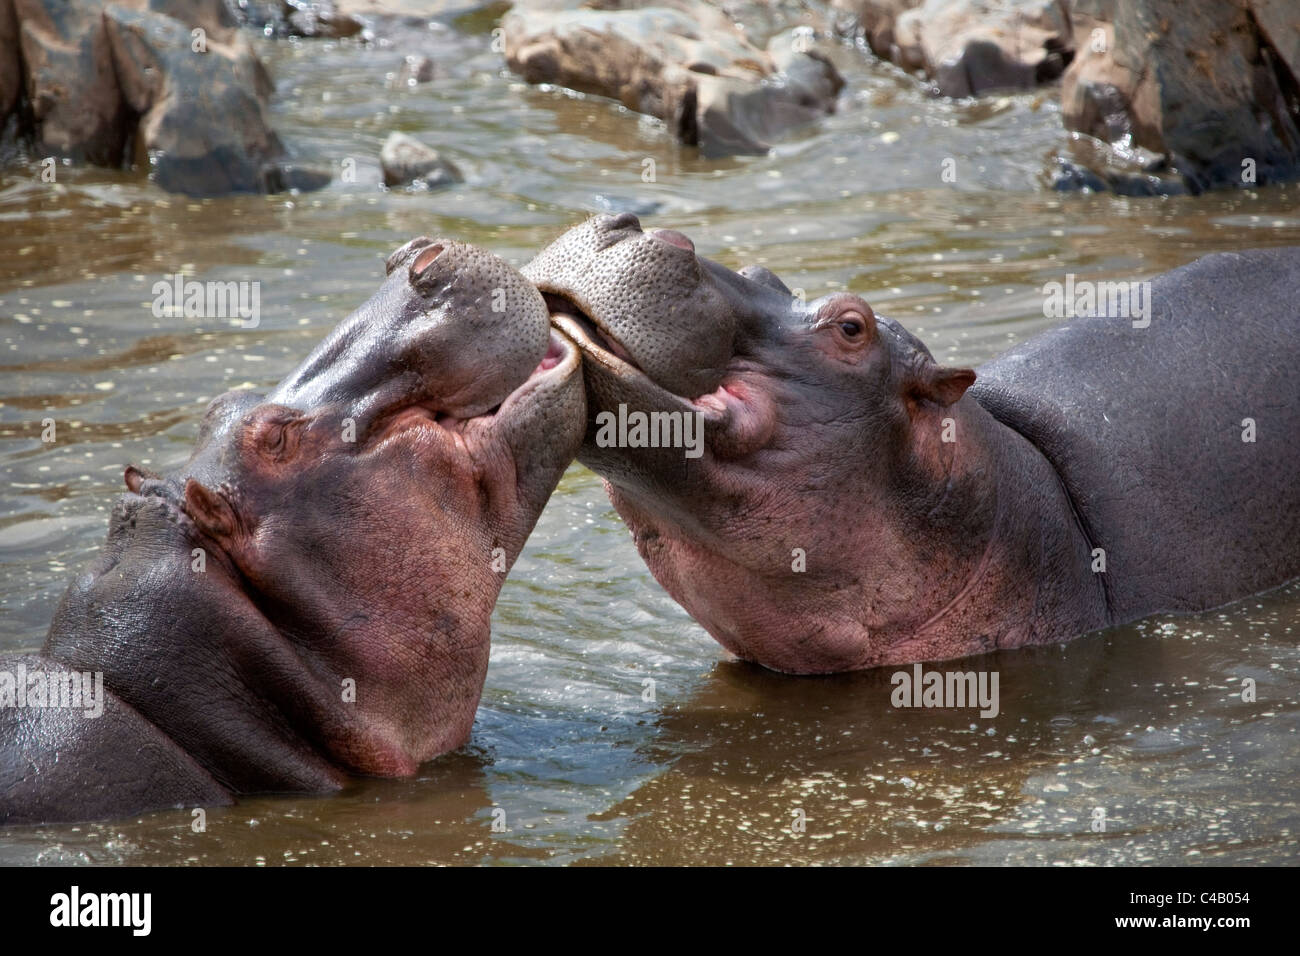 La Tanzanie, Serengeti. Hippopotames joute pour dominance dans les eaux du nord du Serengeti Hippo Pool. Banque D'Images